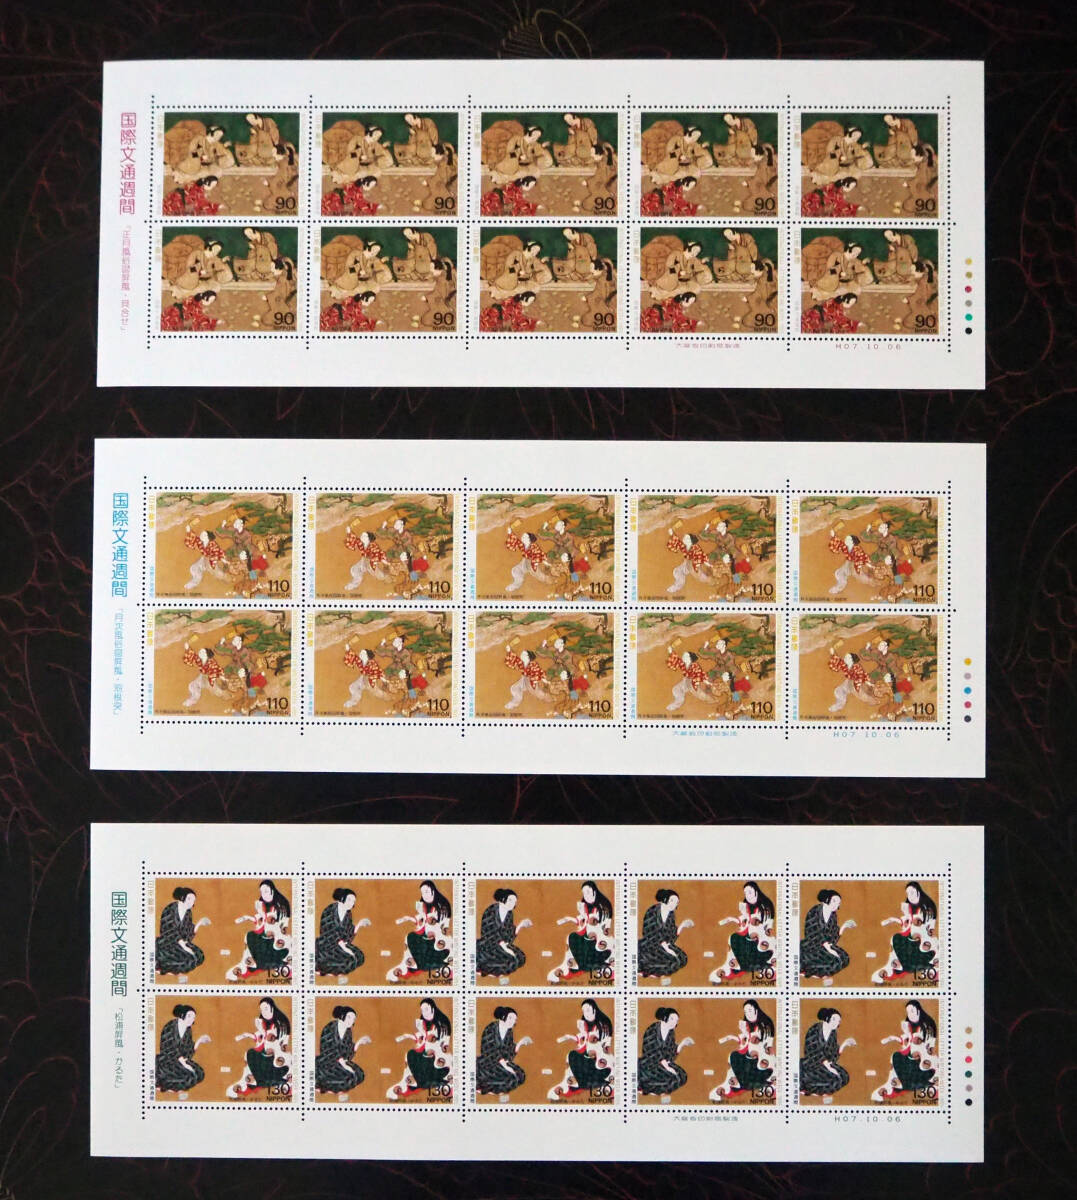 未使用 記念切手 国際文通週間切手 1995年発行 送料無料の画像1